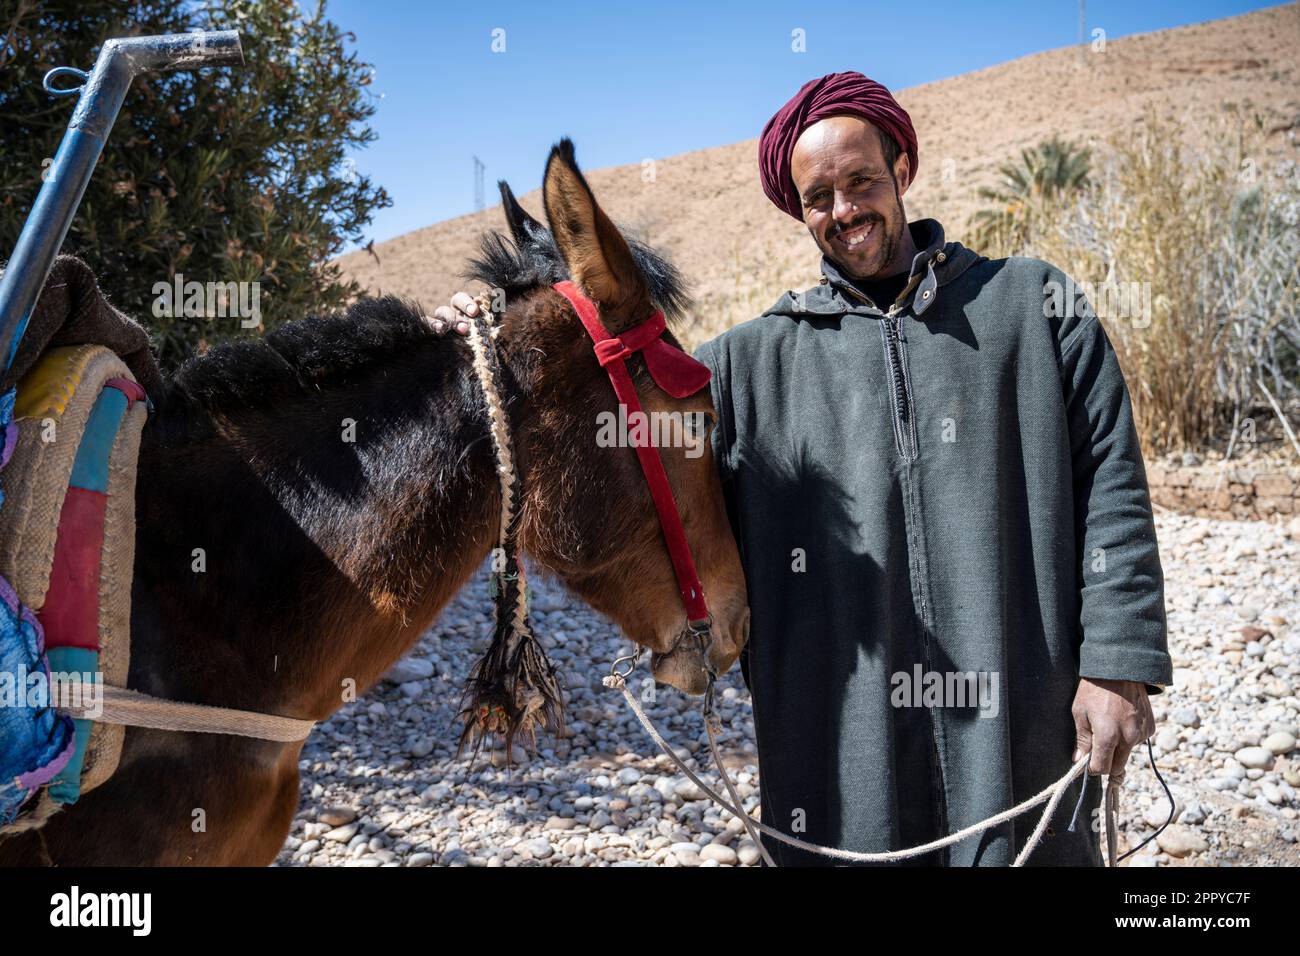 L'uomo berbero vestito con la tradizionale djellaba, con un mulo. Foto Stock